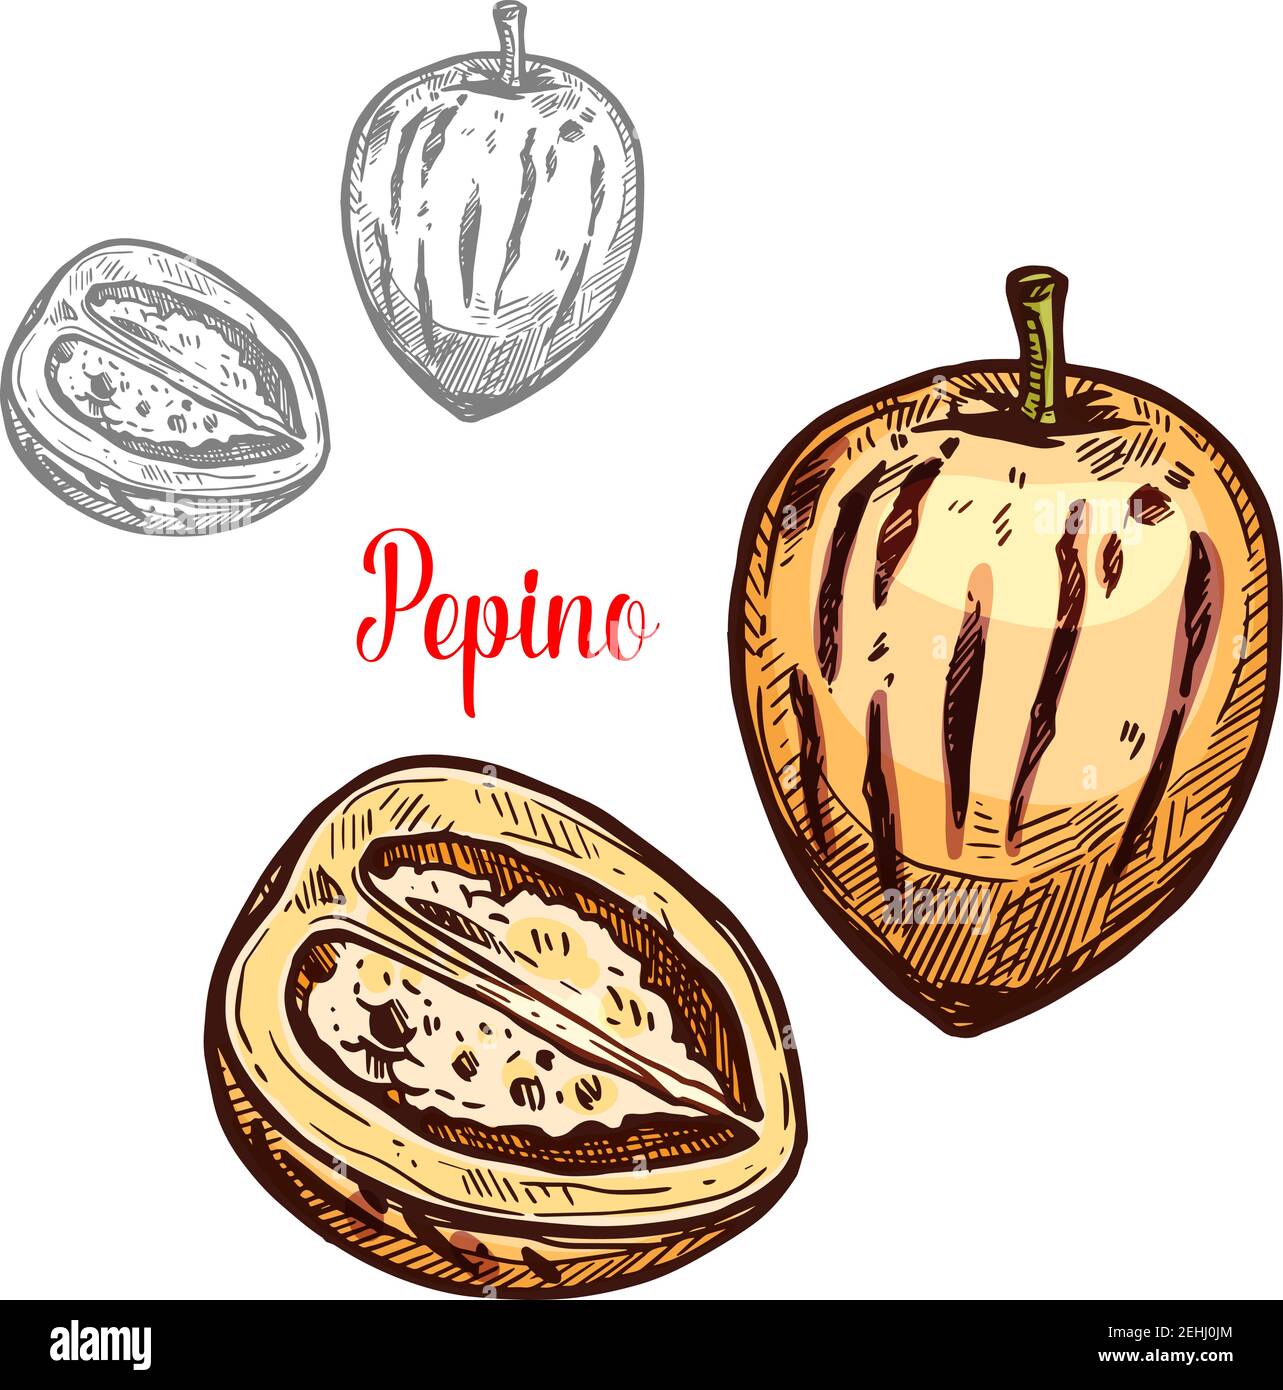 Pepino frutto schizzo di pera esotica di melone. Intera e tagliata a metà  bacca di pepe con buccia gialla icona isolata per l'ingrediente tropicale  del dessert, vegetaria Immagine e Vettoriale - Alamy